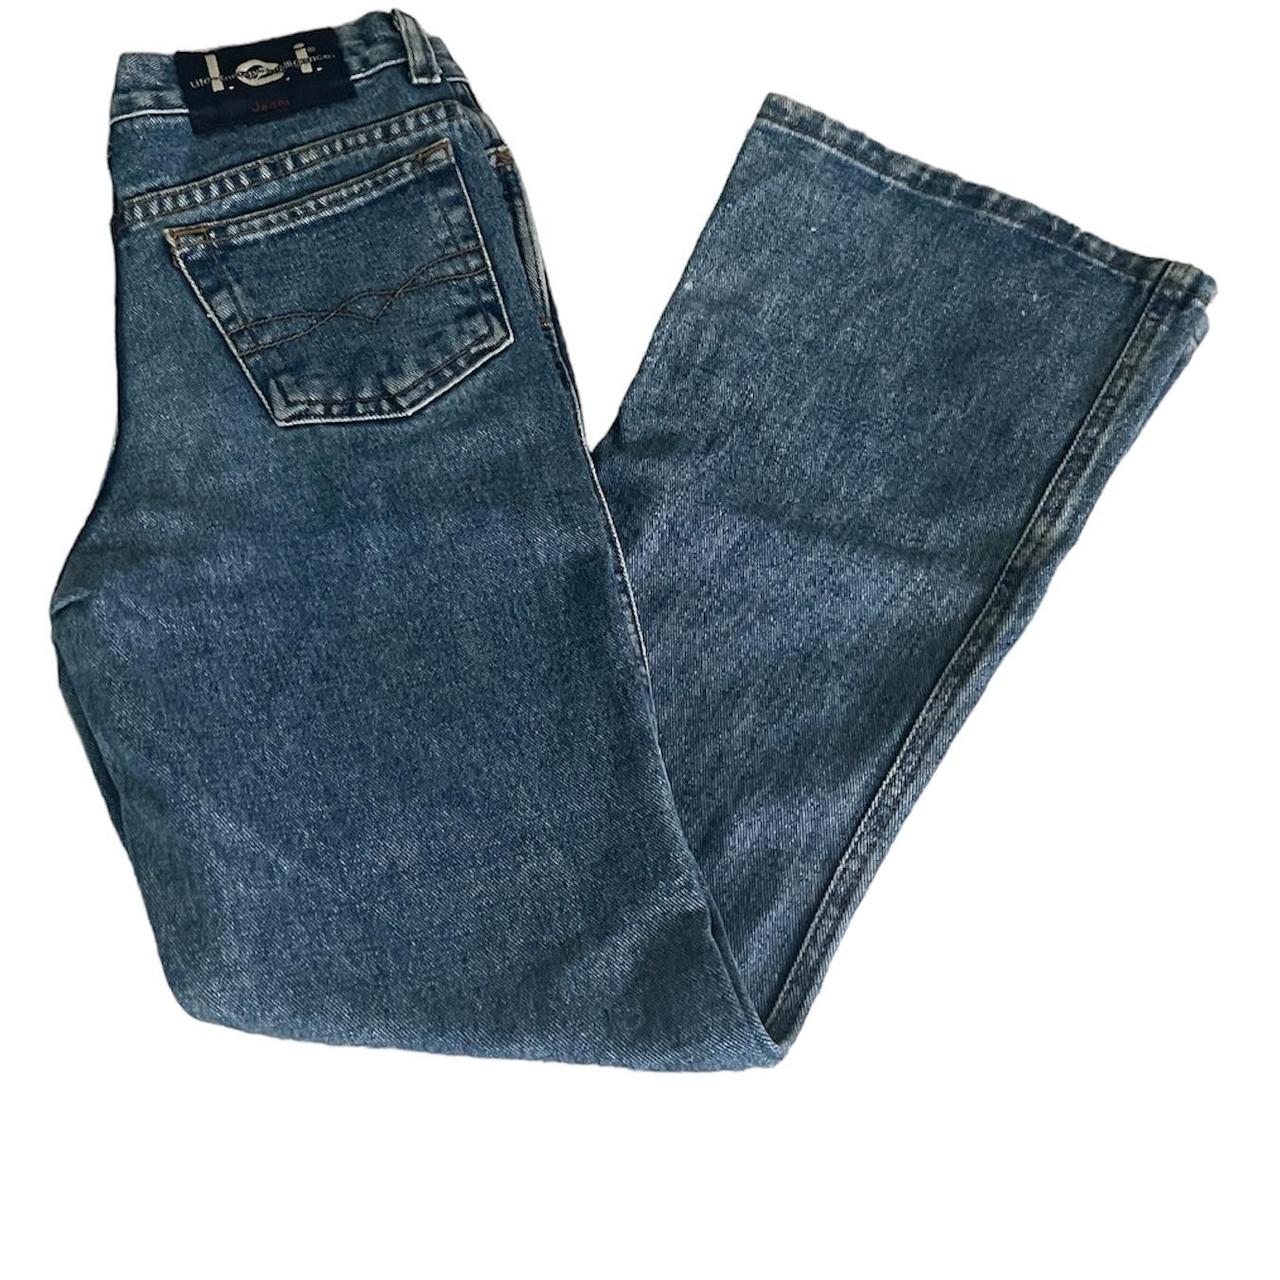 Lei jeans boot cut Size 14 young girls Few bleach... - Depop